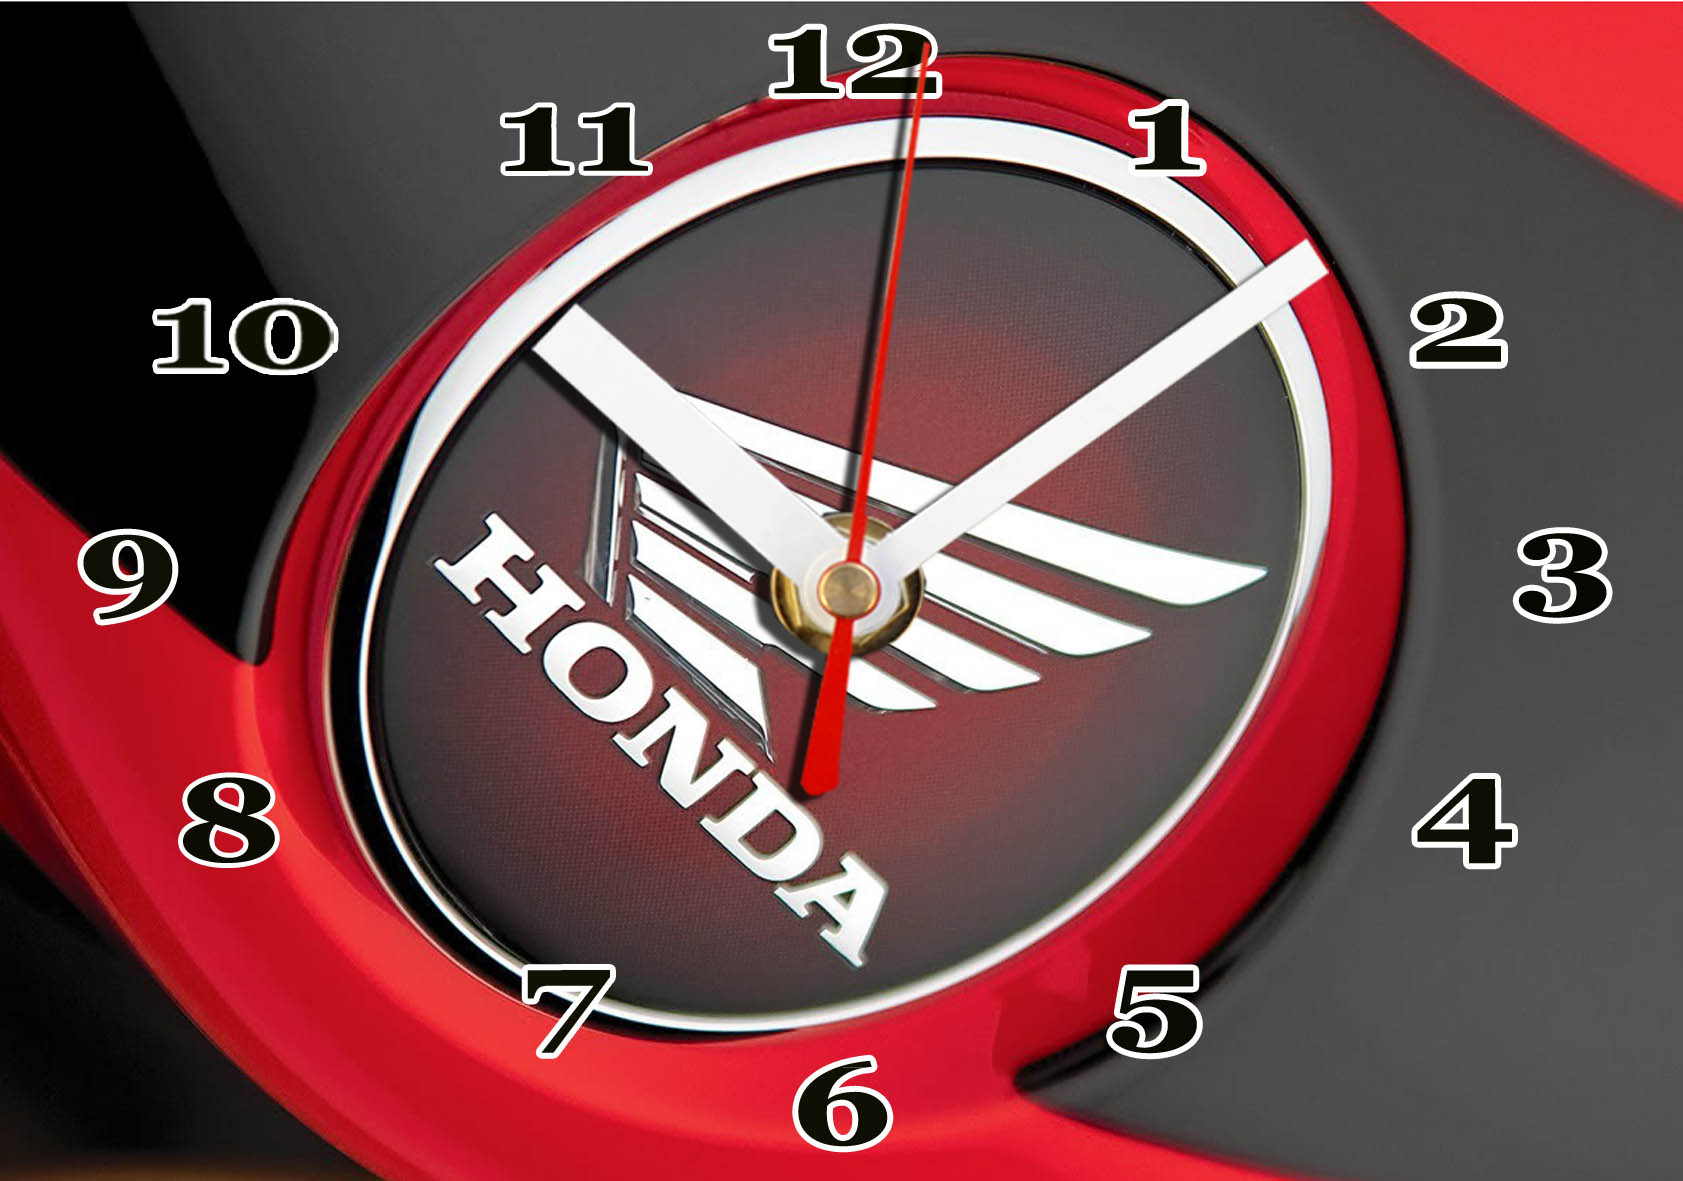 Logo Honda moto en horloge murale